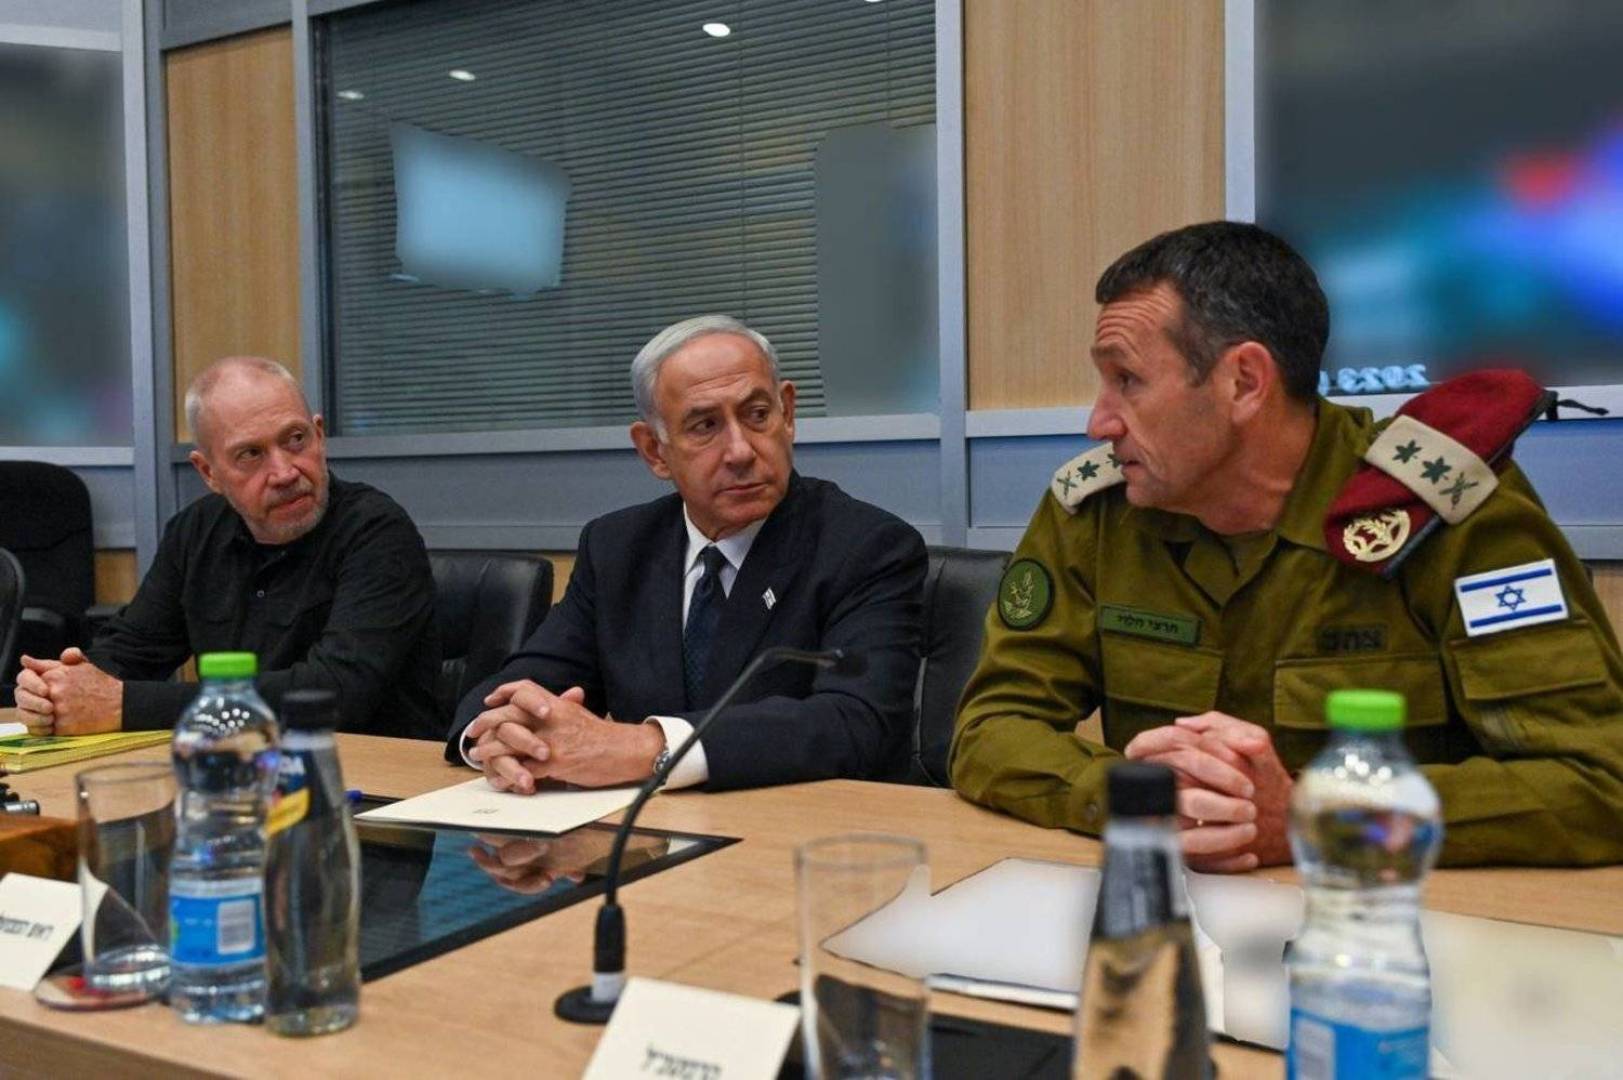 الأركان الإسرائيلية تصادق على خطة لمواصلة القتال في غزة